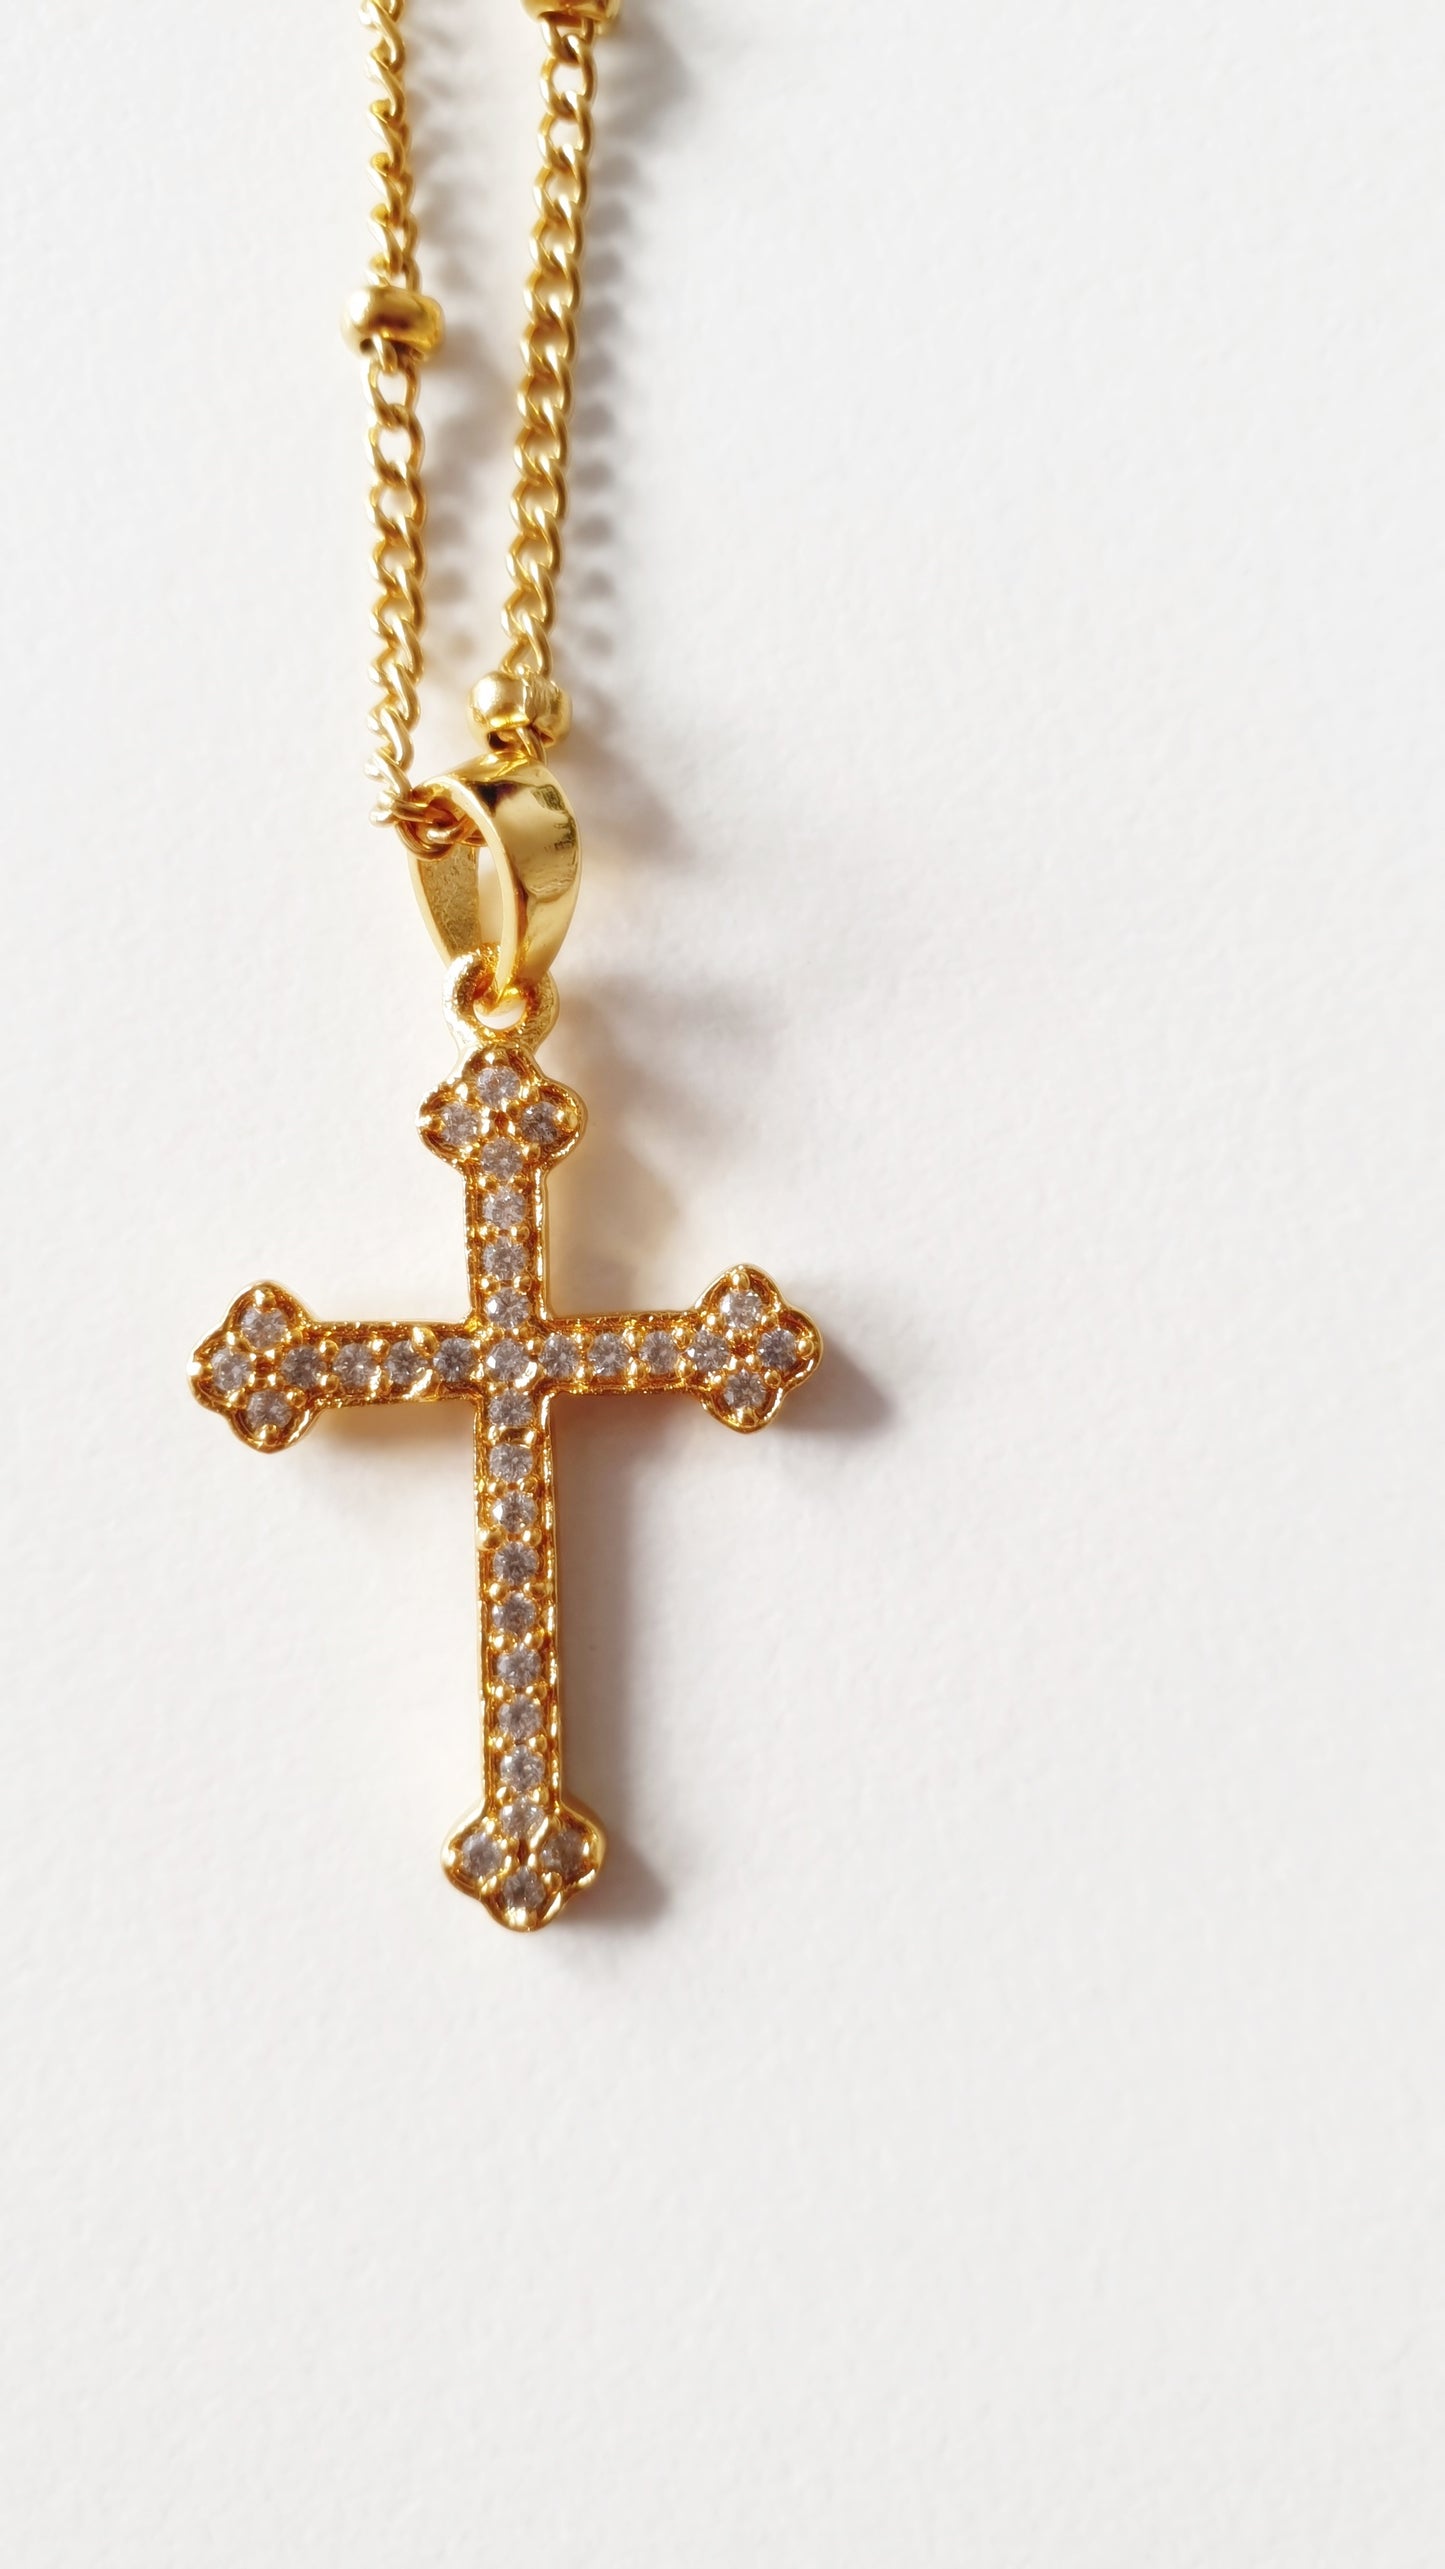 Colar dourado com cruz adornada com zircónias